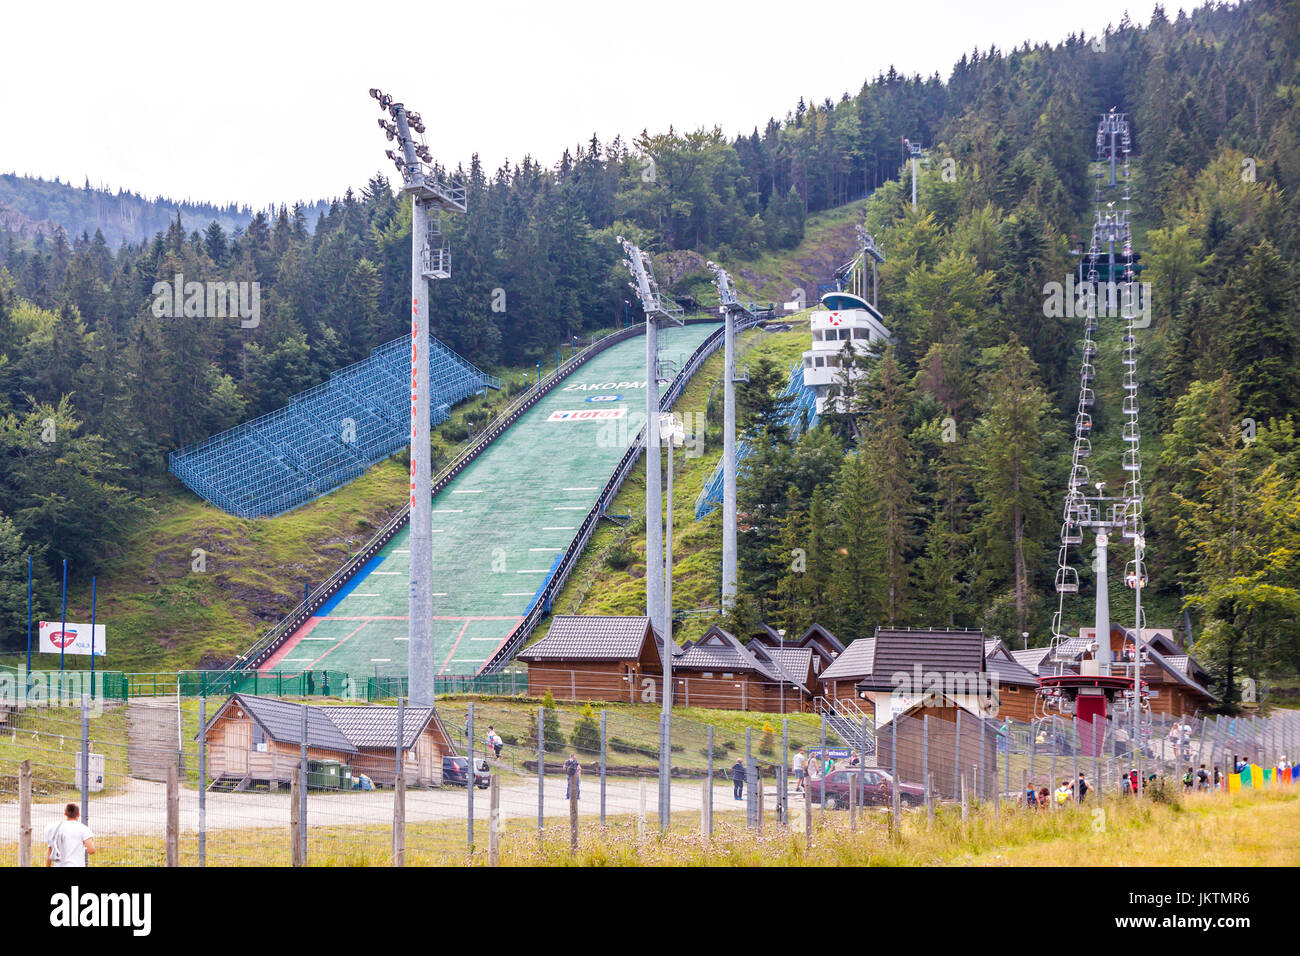 ZAKOPANE, POLOGNE - Aug 3, 2015 : Le Tremplin (le grand tremplin de saut à ski), lieu d'exposition sur la pente de la montagne (1378 m Krokiew) à Zakopane. C'est un r Banque D'Images